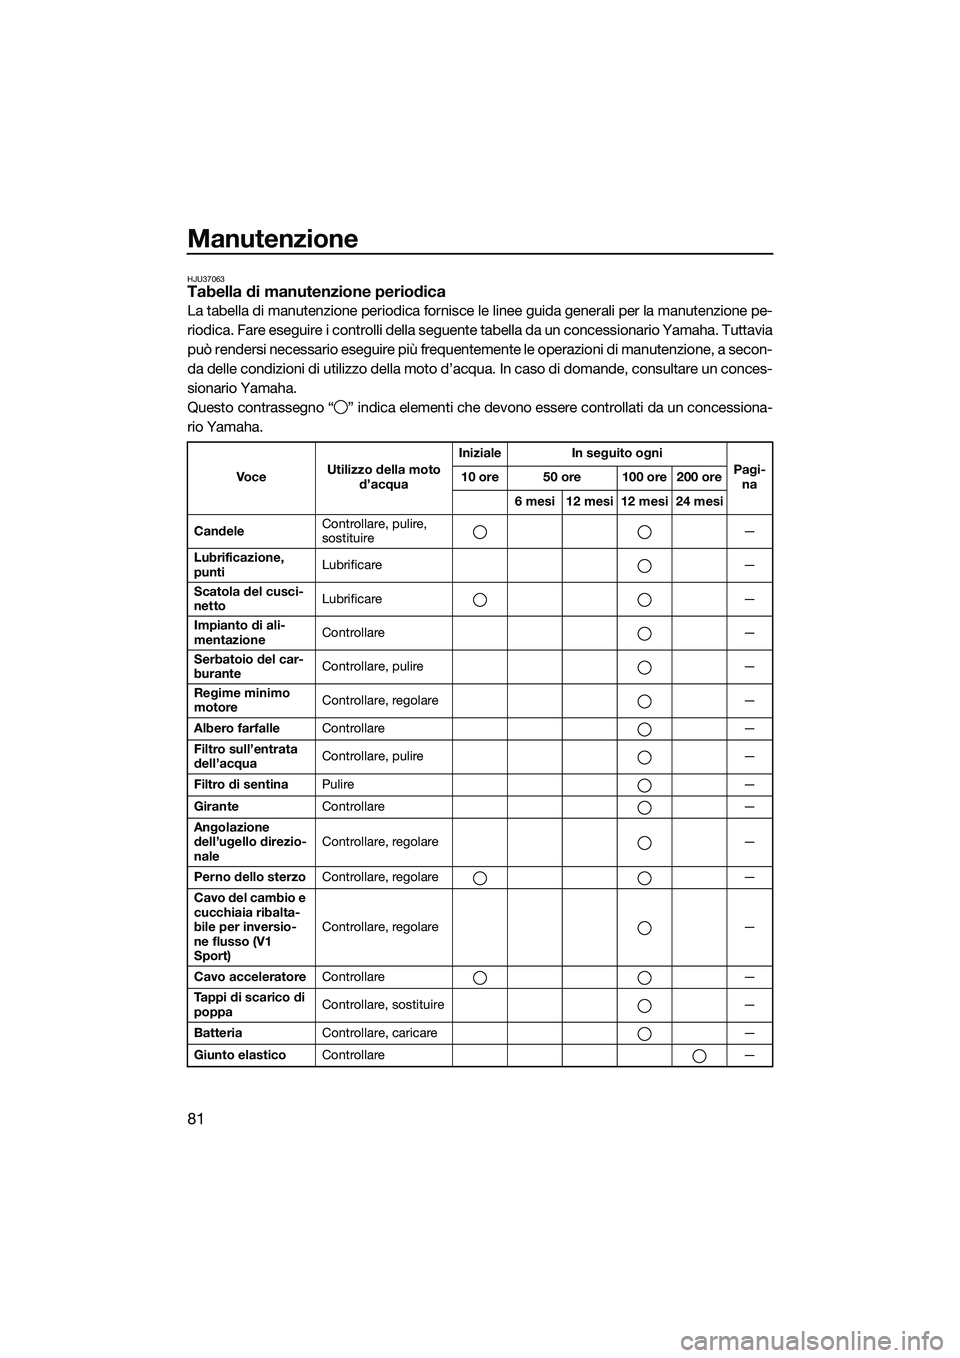 YAMAHA V1 2015  Manuale duso (in Italian) Manutenzione
81
HJU37063Tabella di manutenzione periodica
La tabella di manutenzione periodica fornisce le linee guida generali per la manutenzione pe-
riodica. Fare eseguire i controlli della seguent